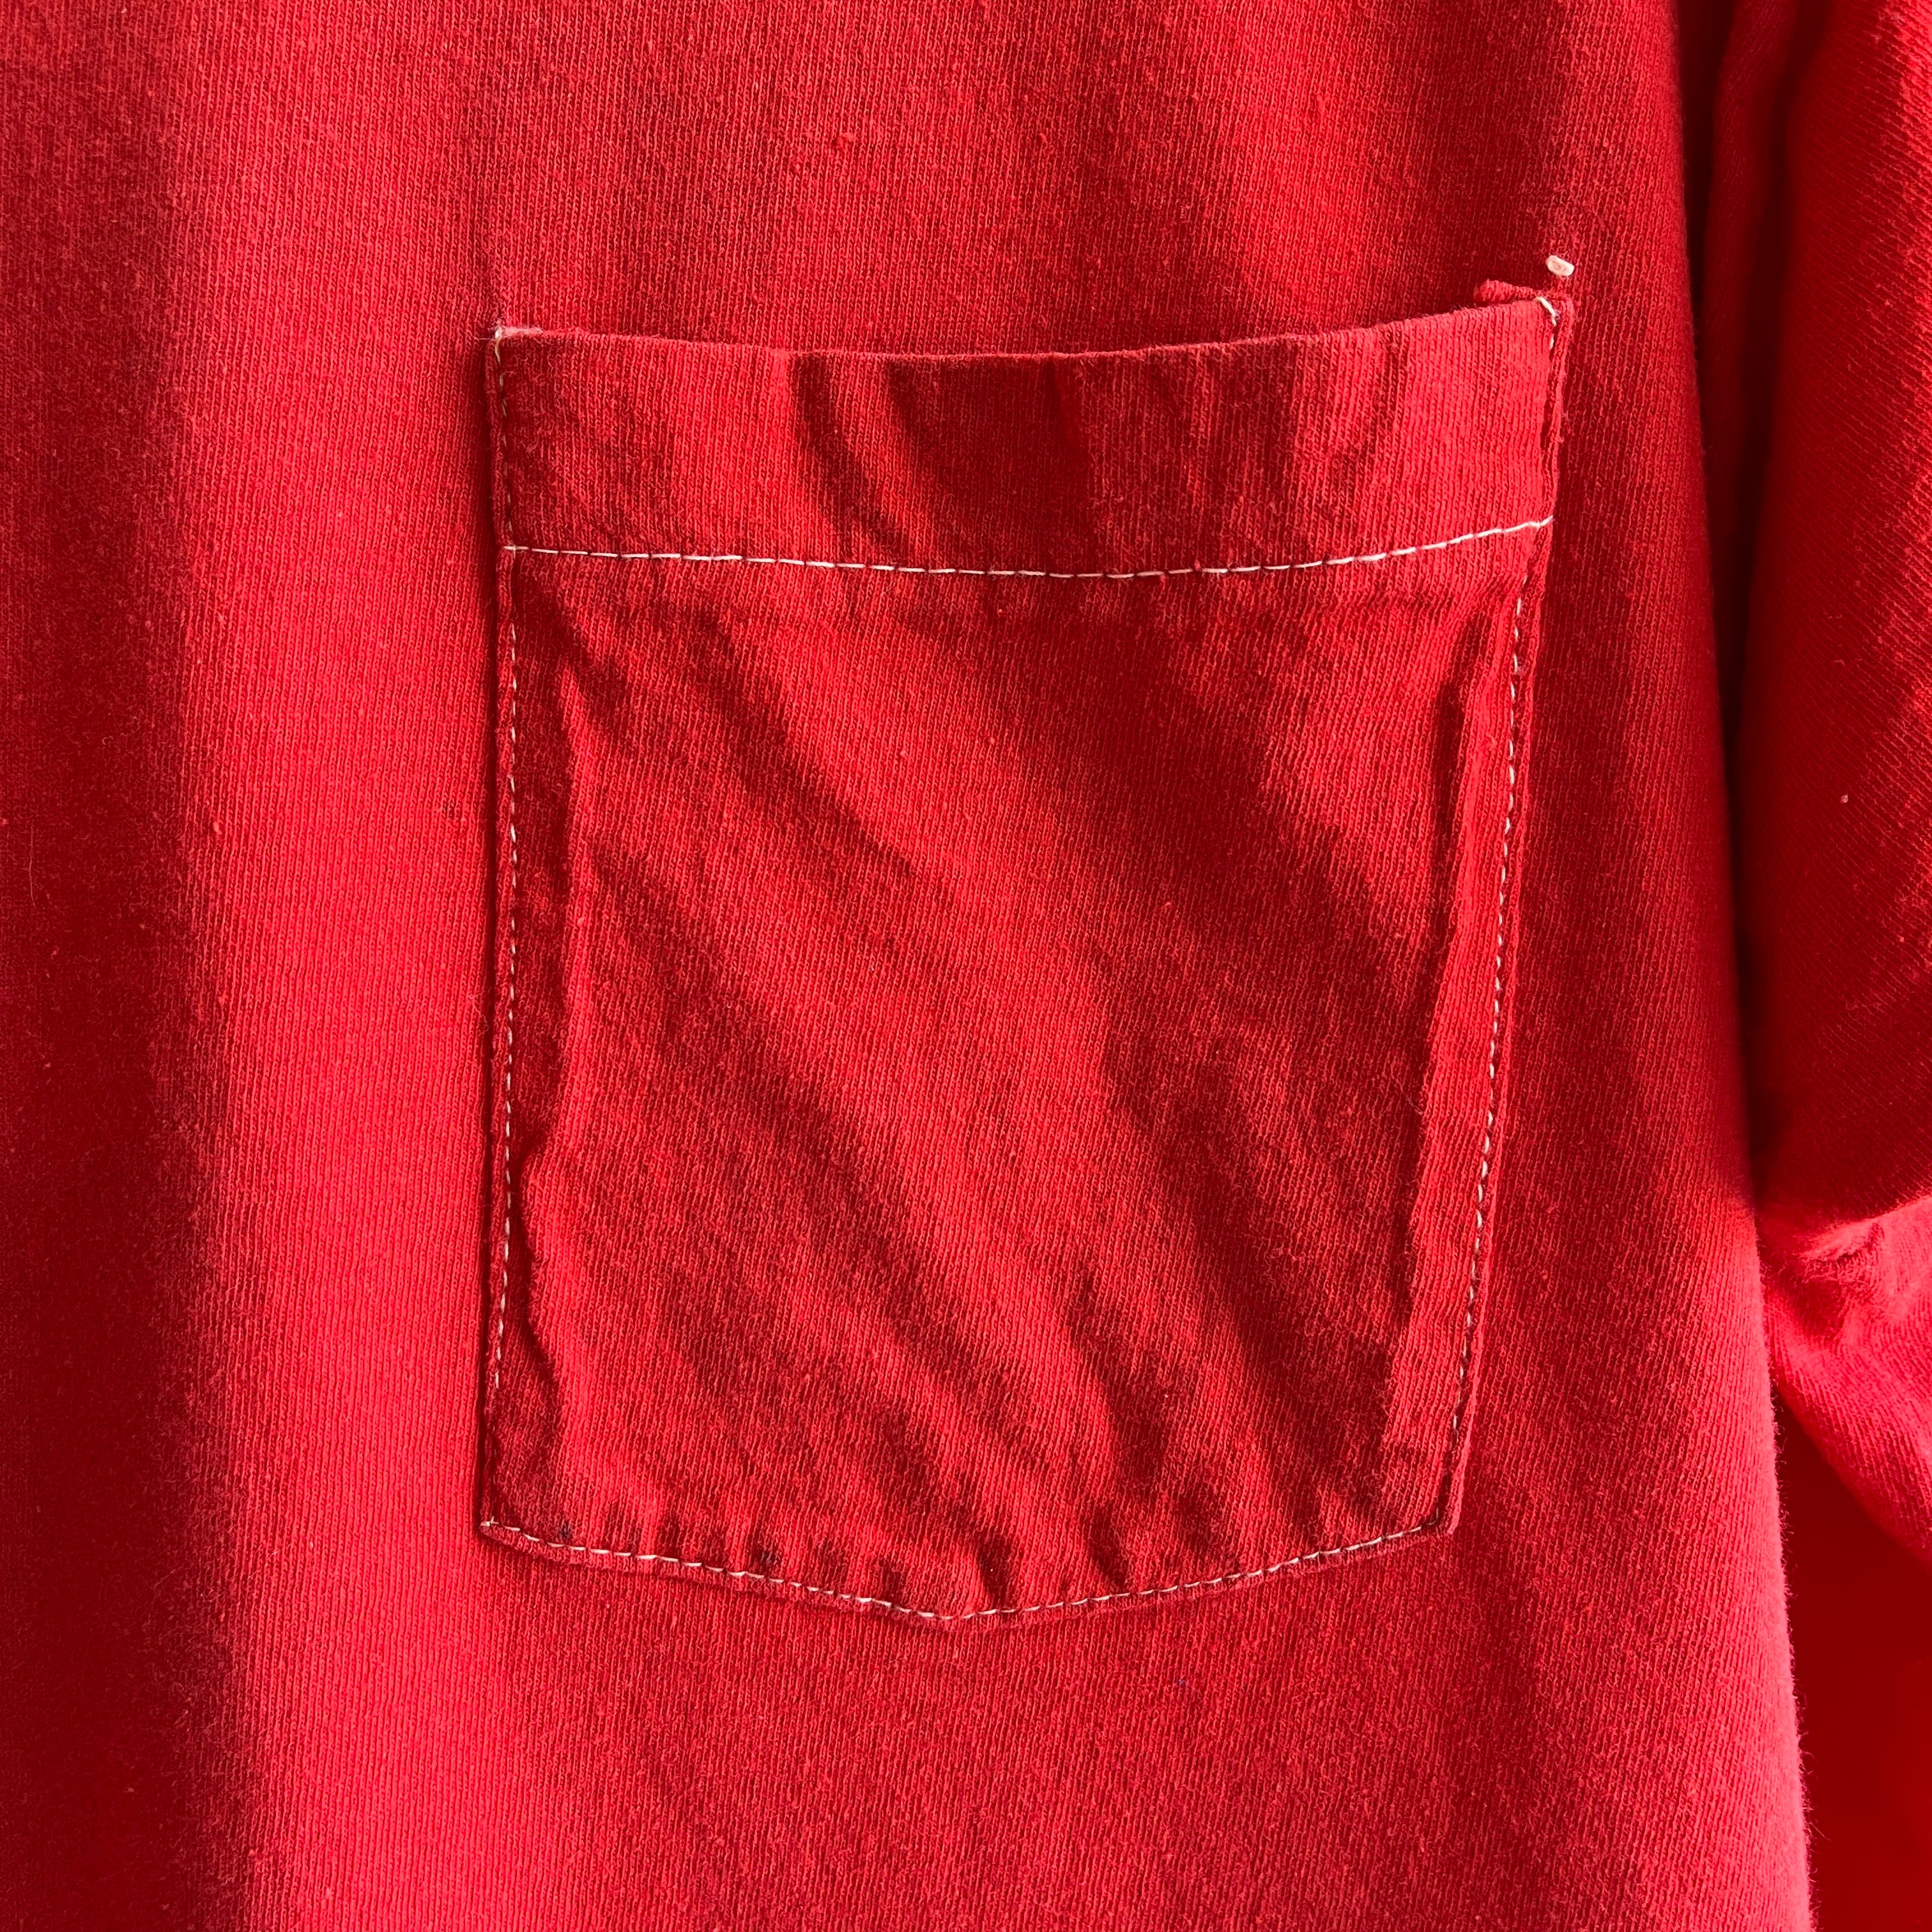 T-shirt de poche rouge vierge FOTL des années 1980 avec coutures de poche blanches contrastées - ce sont les petites choses !